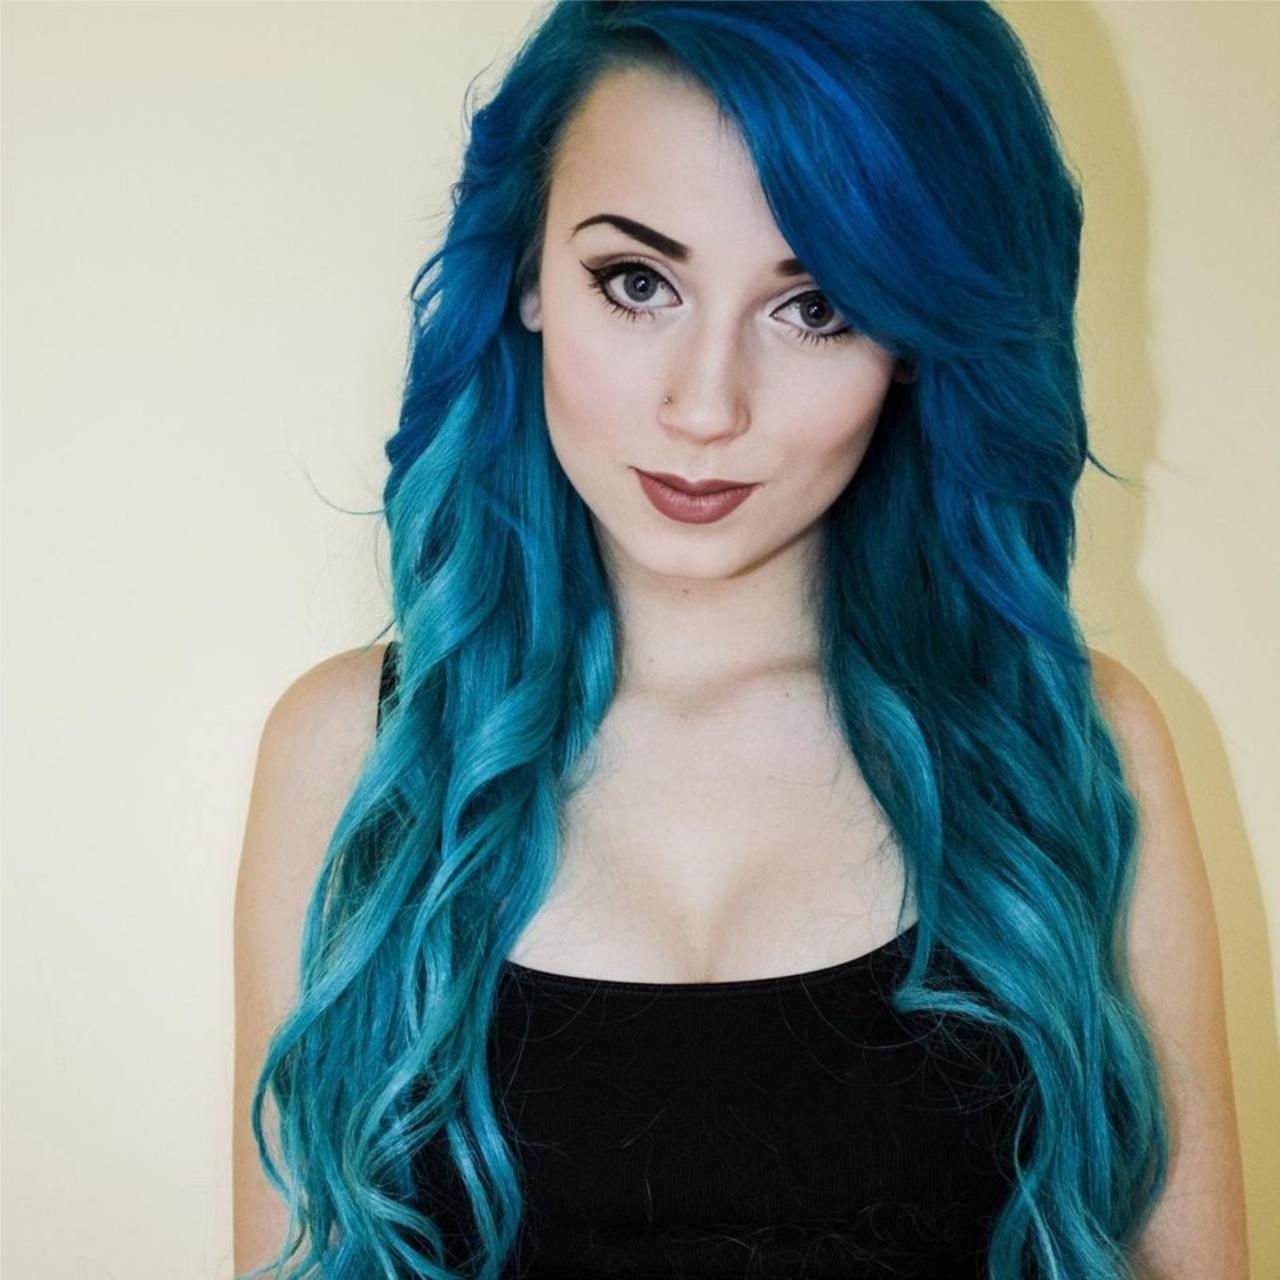 Blue hair camgirl free porn pic